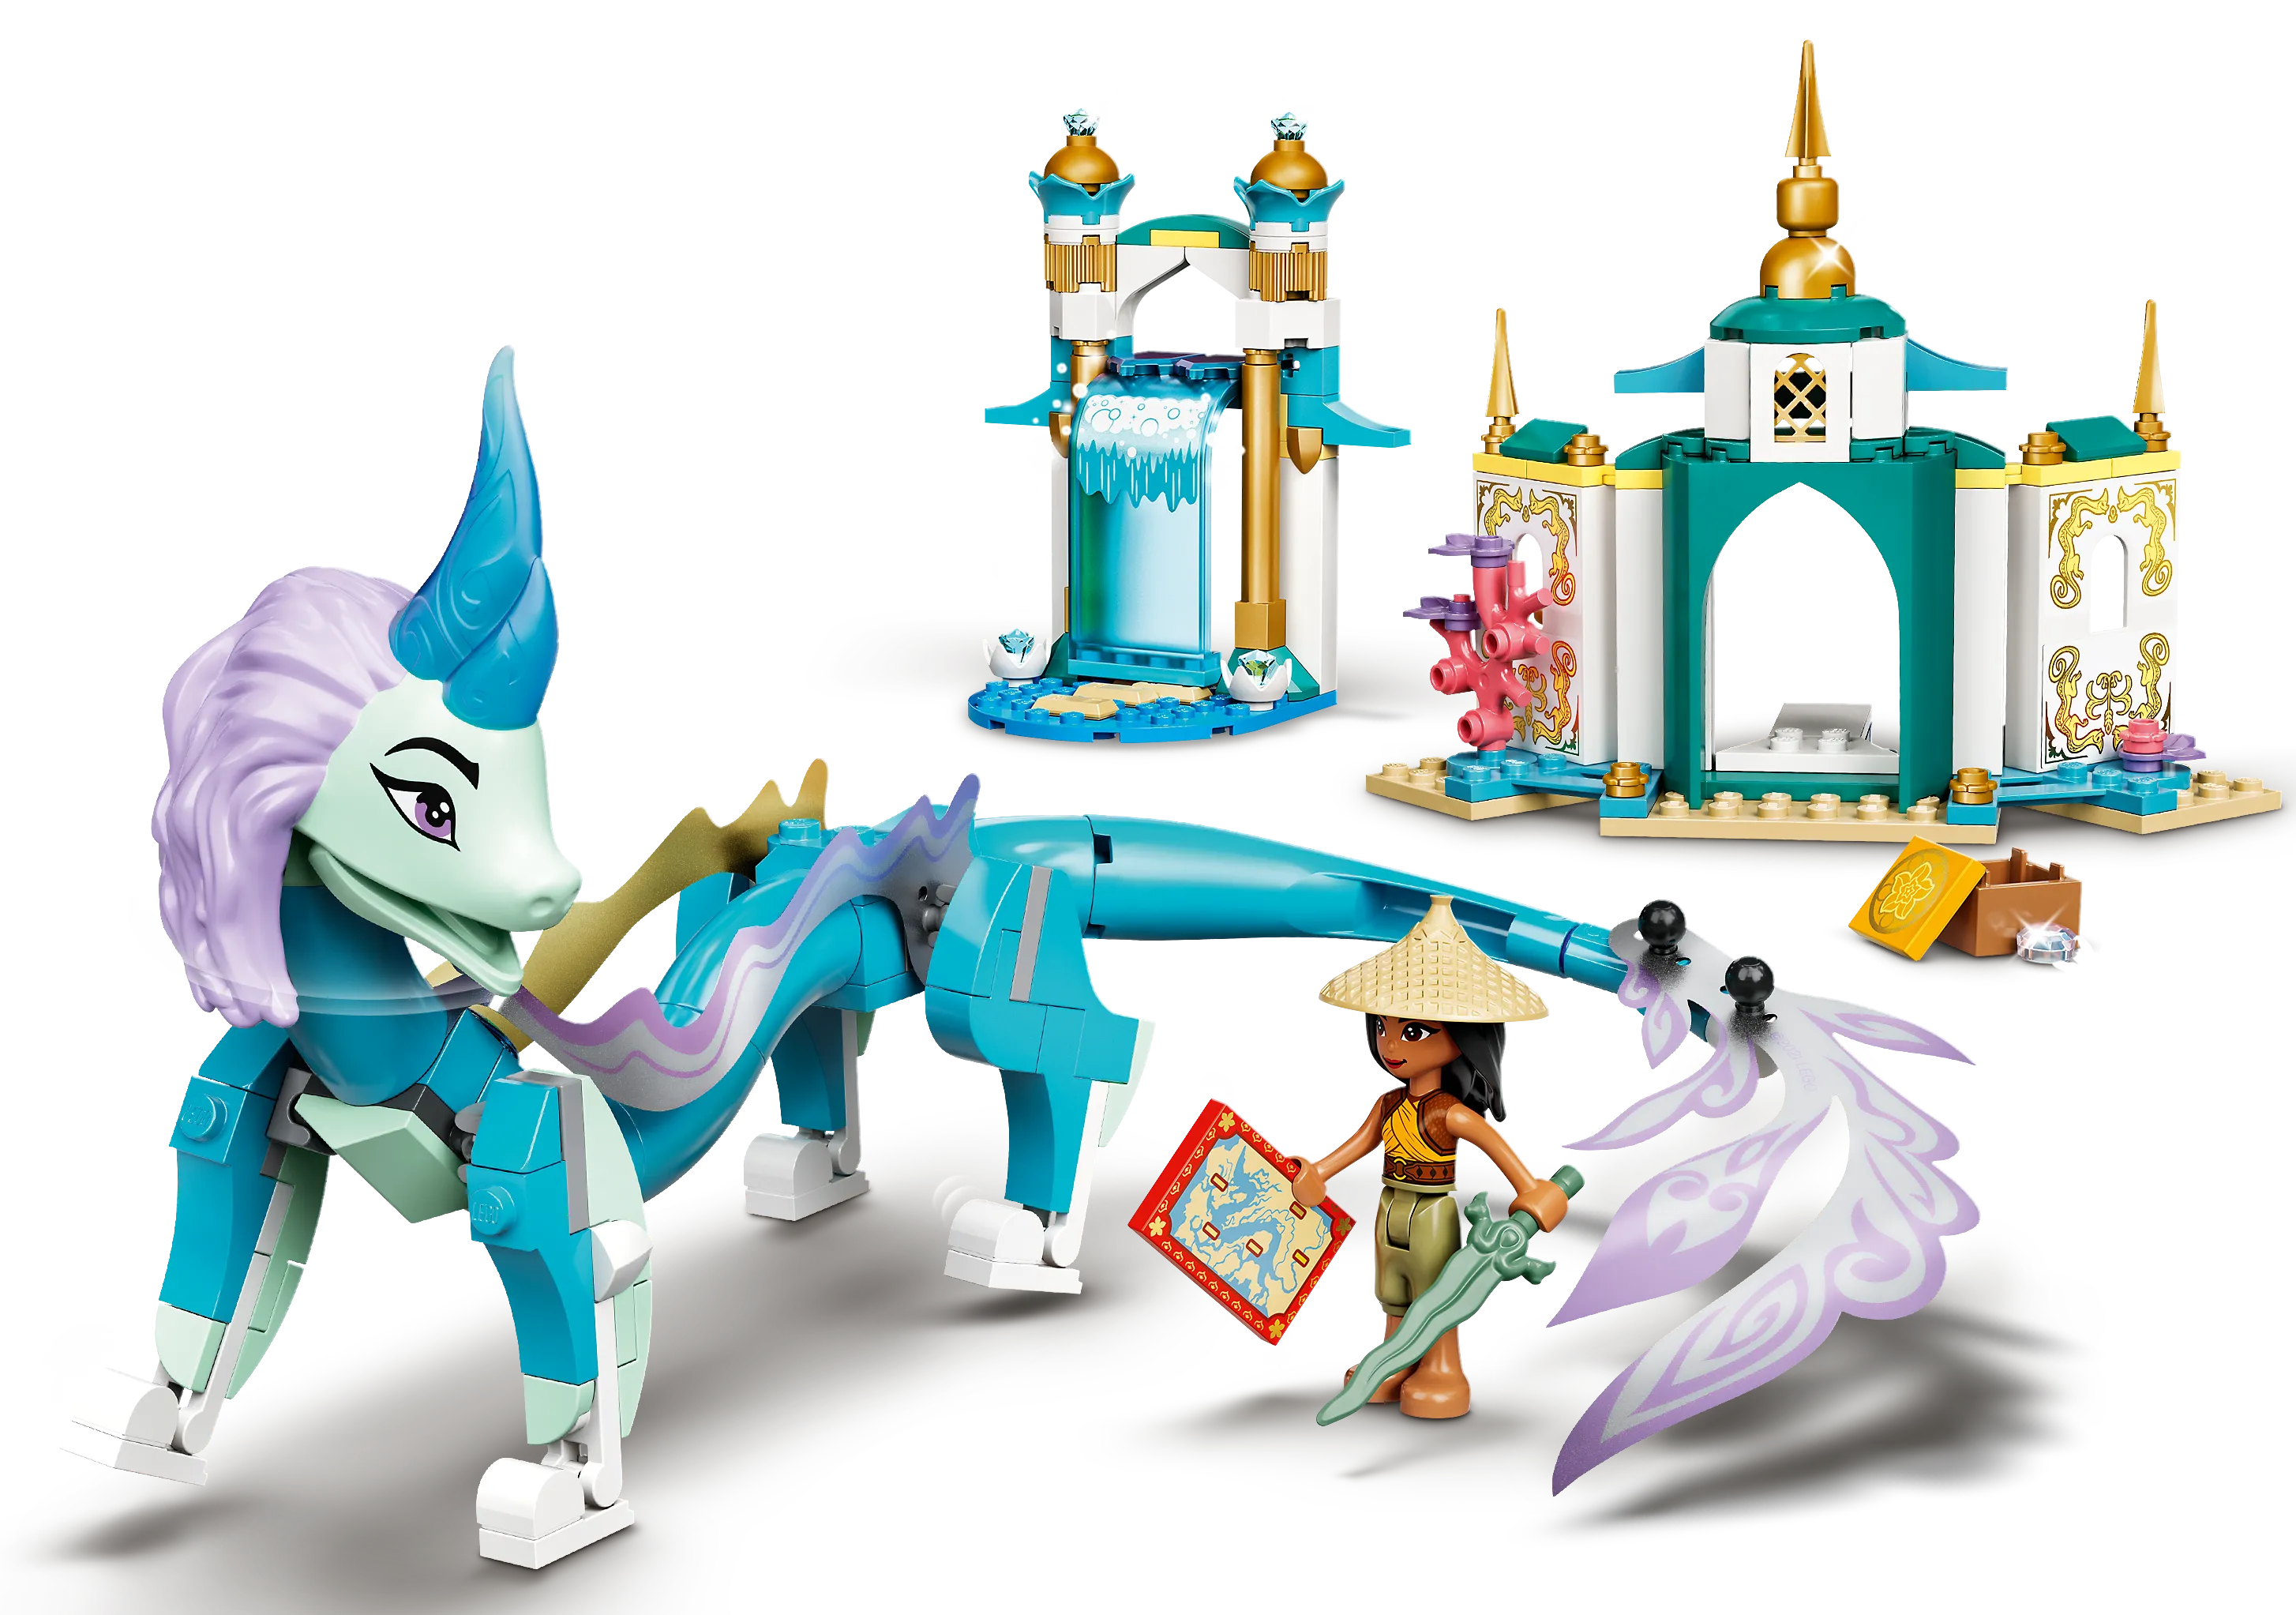 LEGO Disney Raya and Sisu Dragon • Set 43184 • SetDB